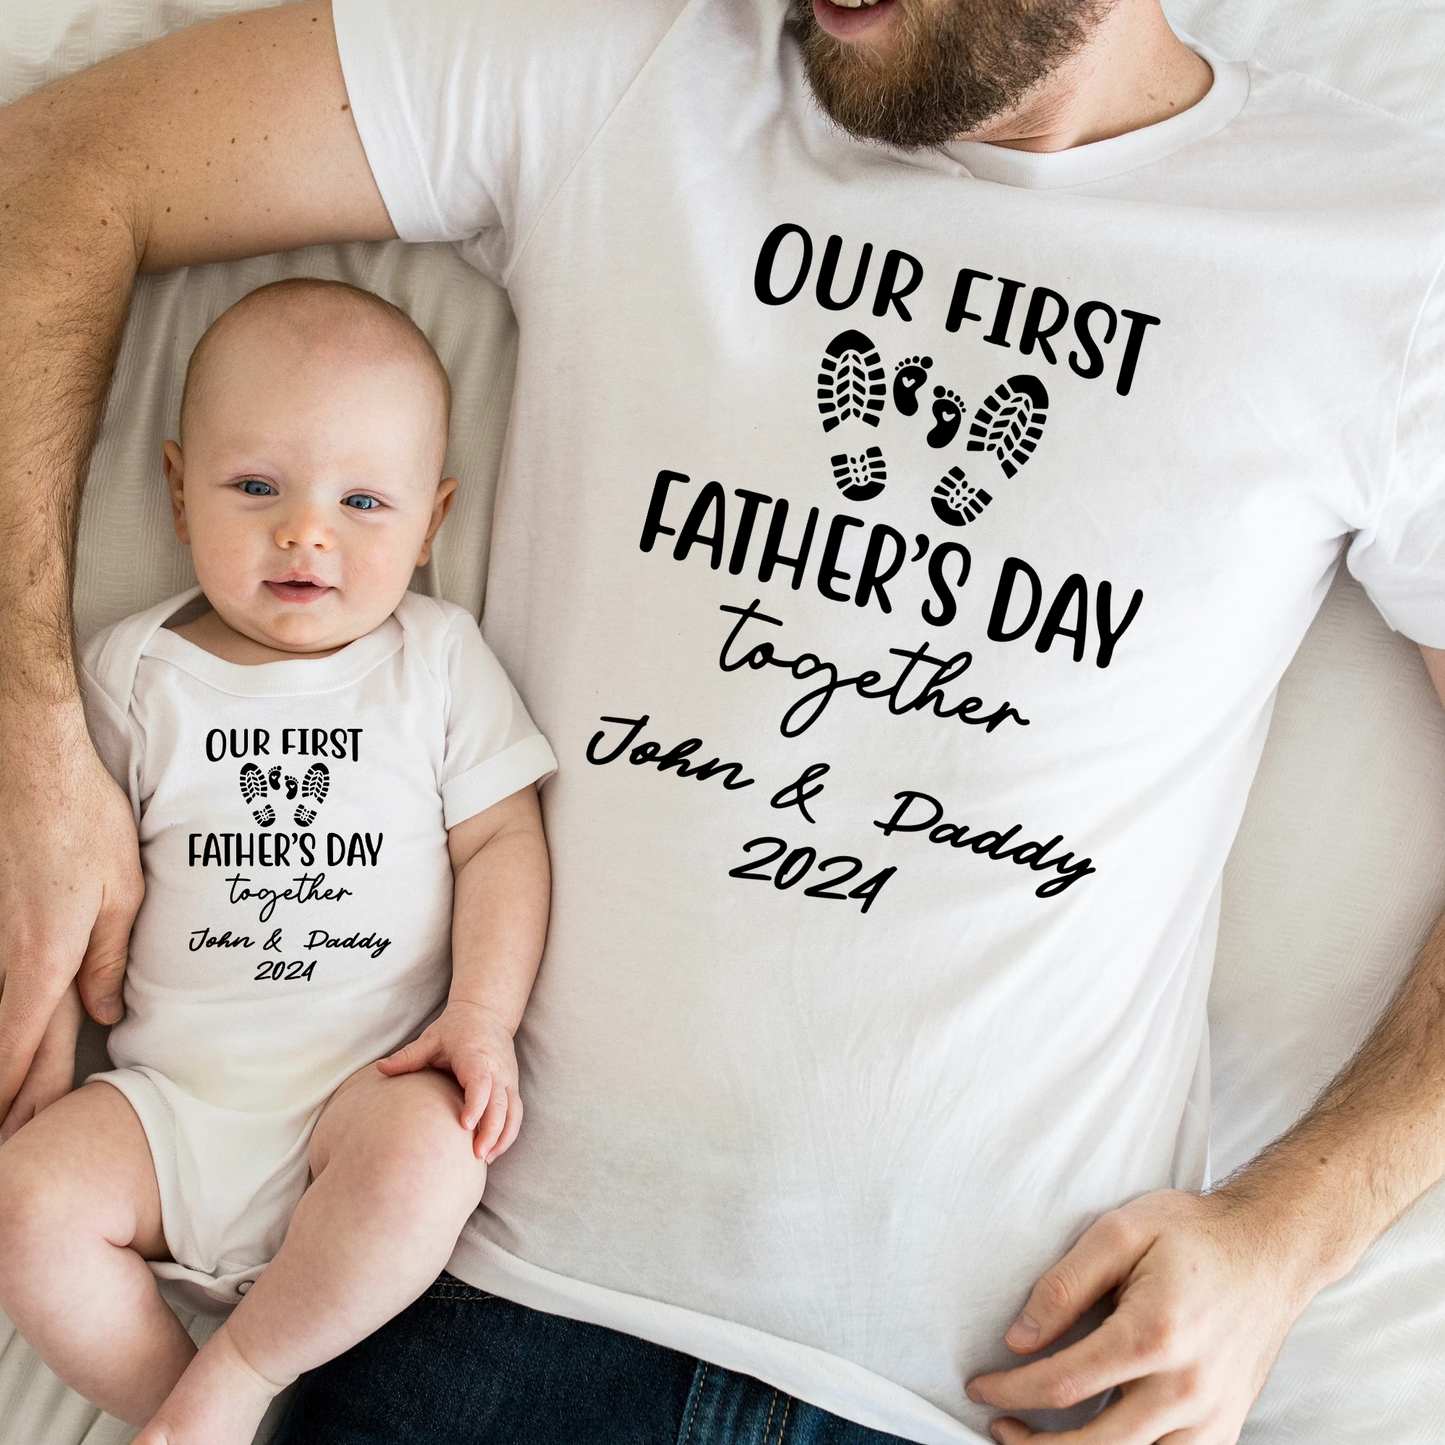 Unser Erster Vatertag - Personalisiertes T-Shirt für Vater und Kind